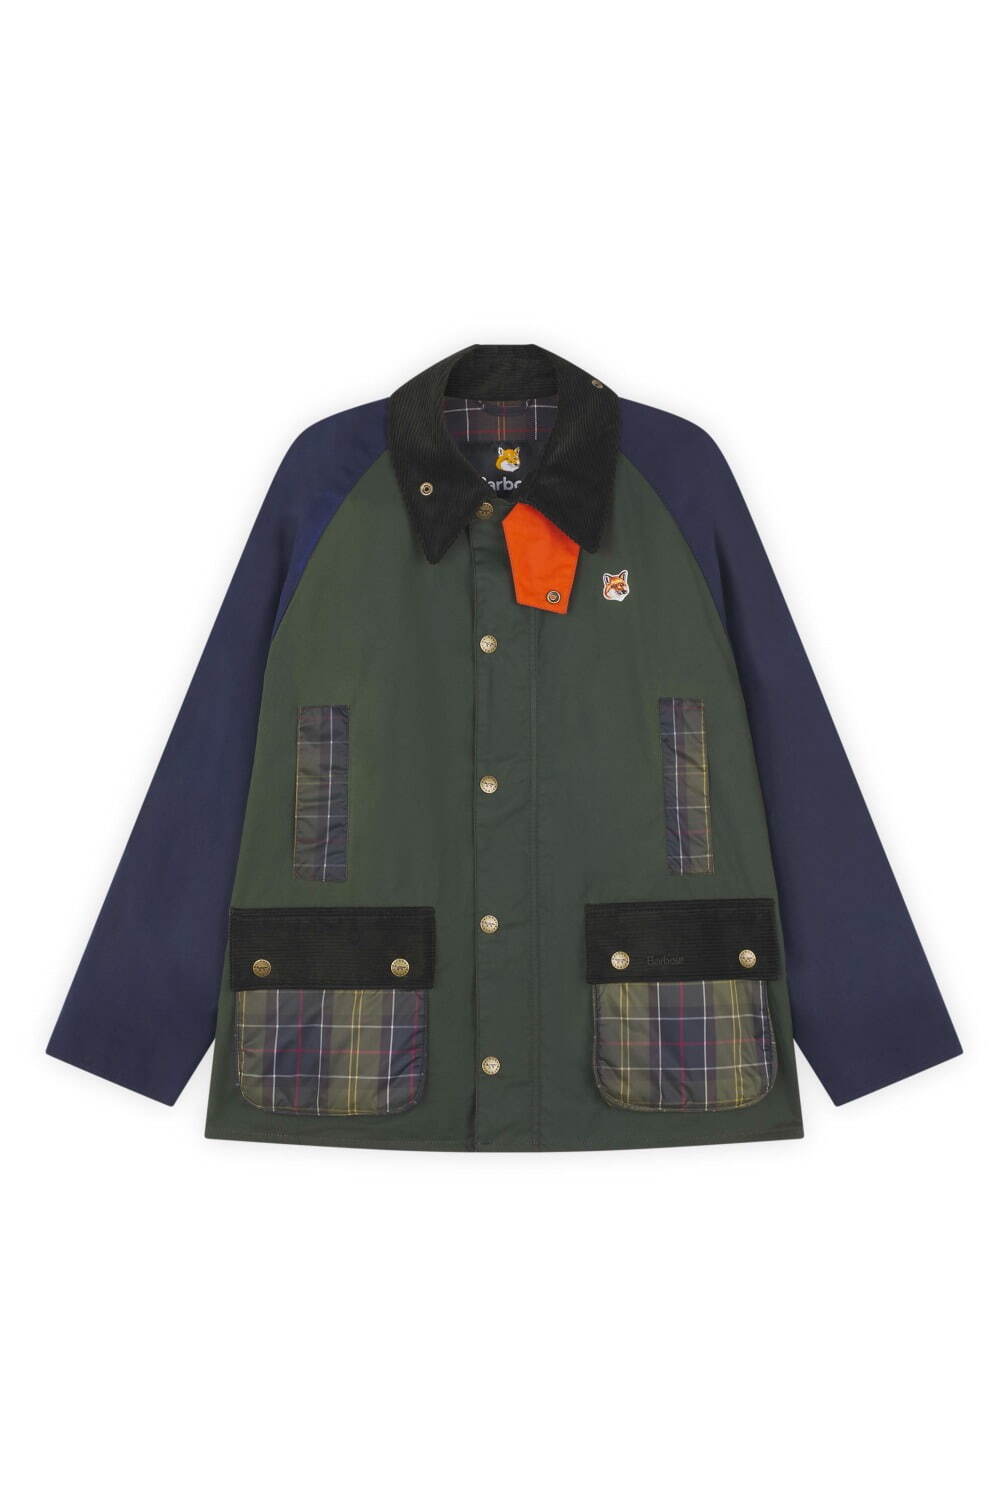 「Maison Kitsuné×Barbour Beaufort Patchwork Waxed Jacket」63,000円